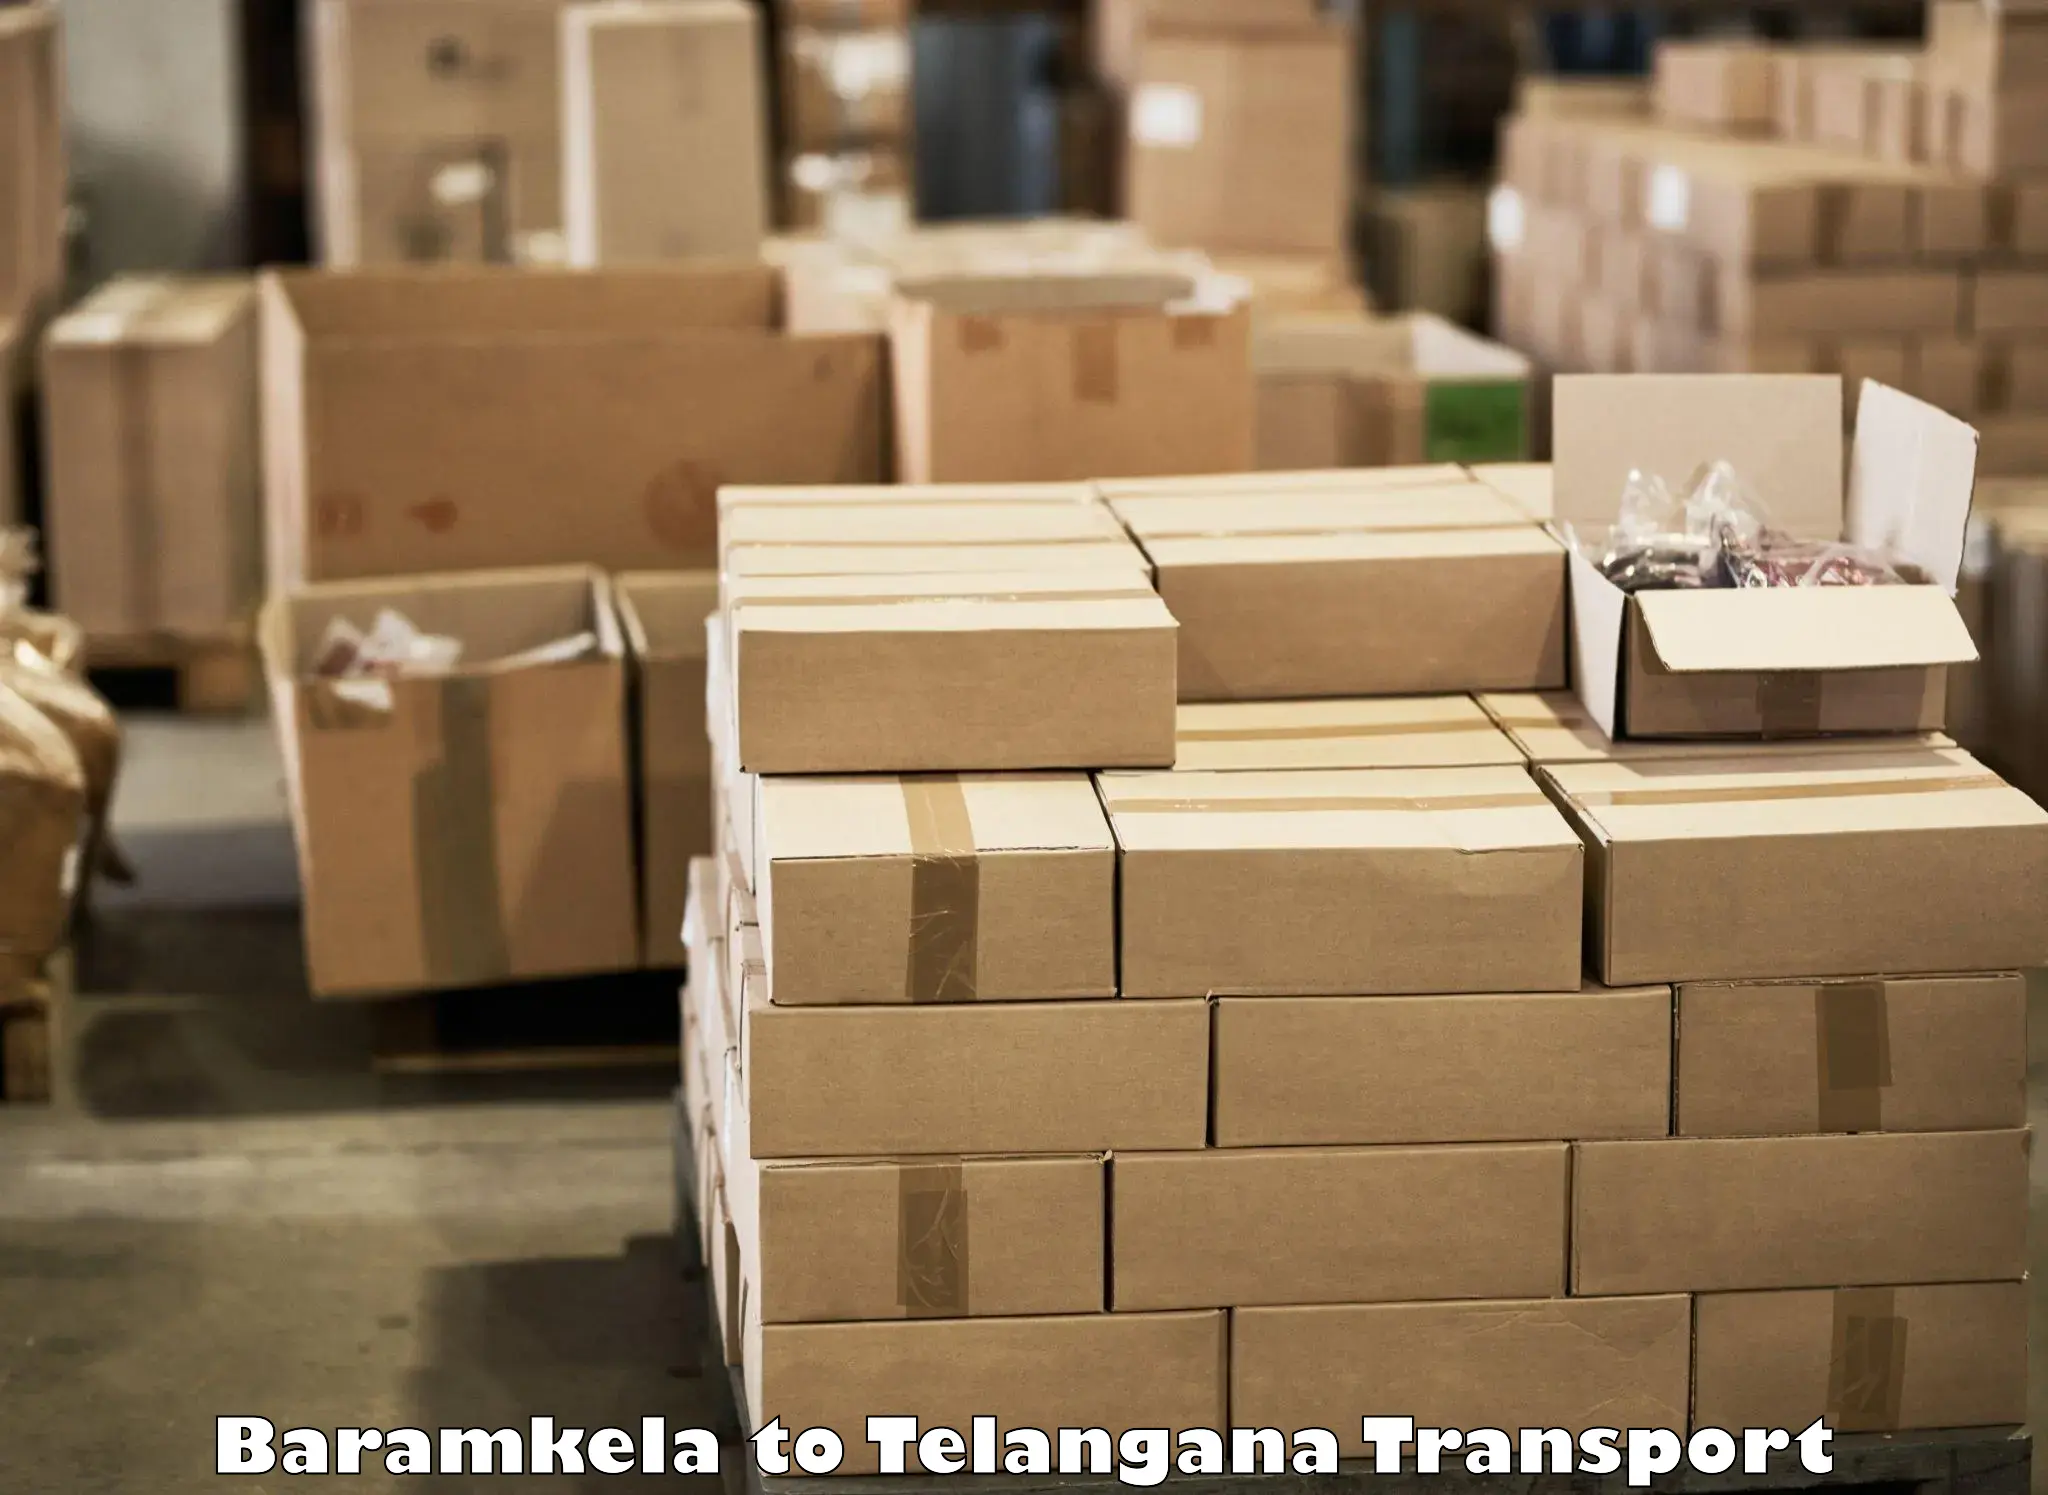 Vehicle transport services Baramkela to Mahabubabad